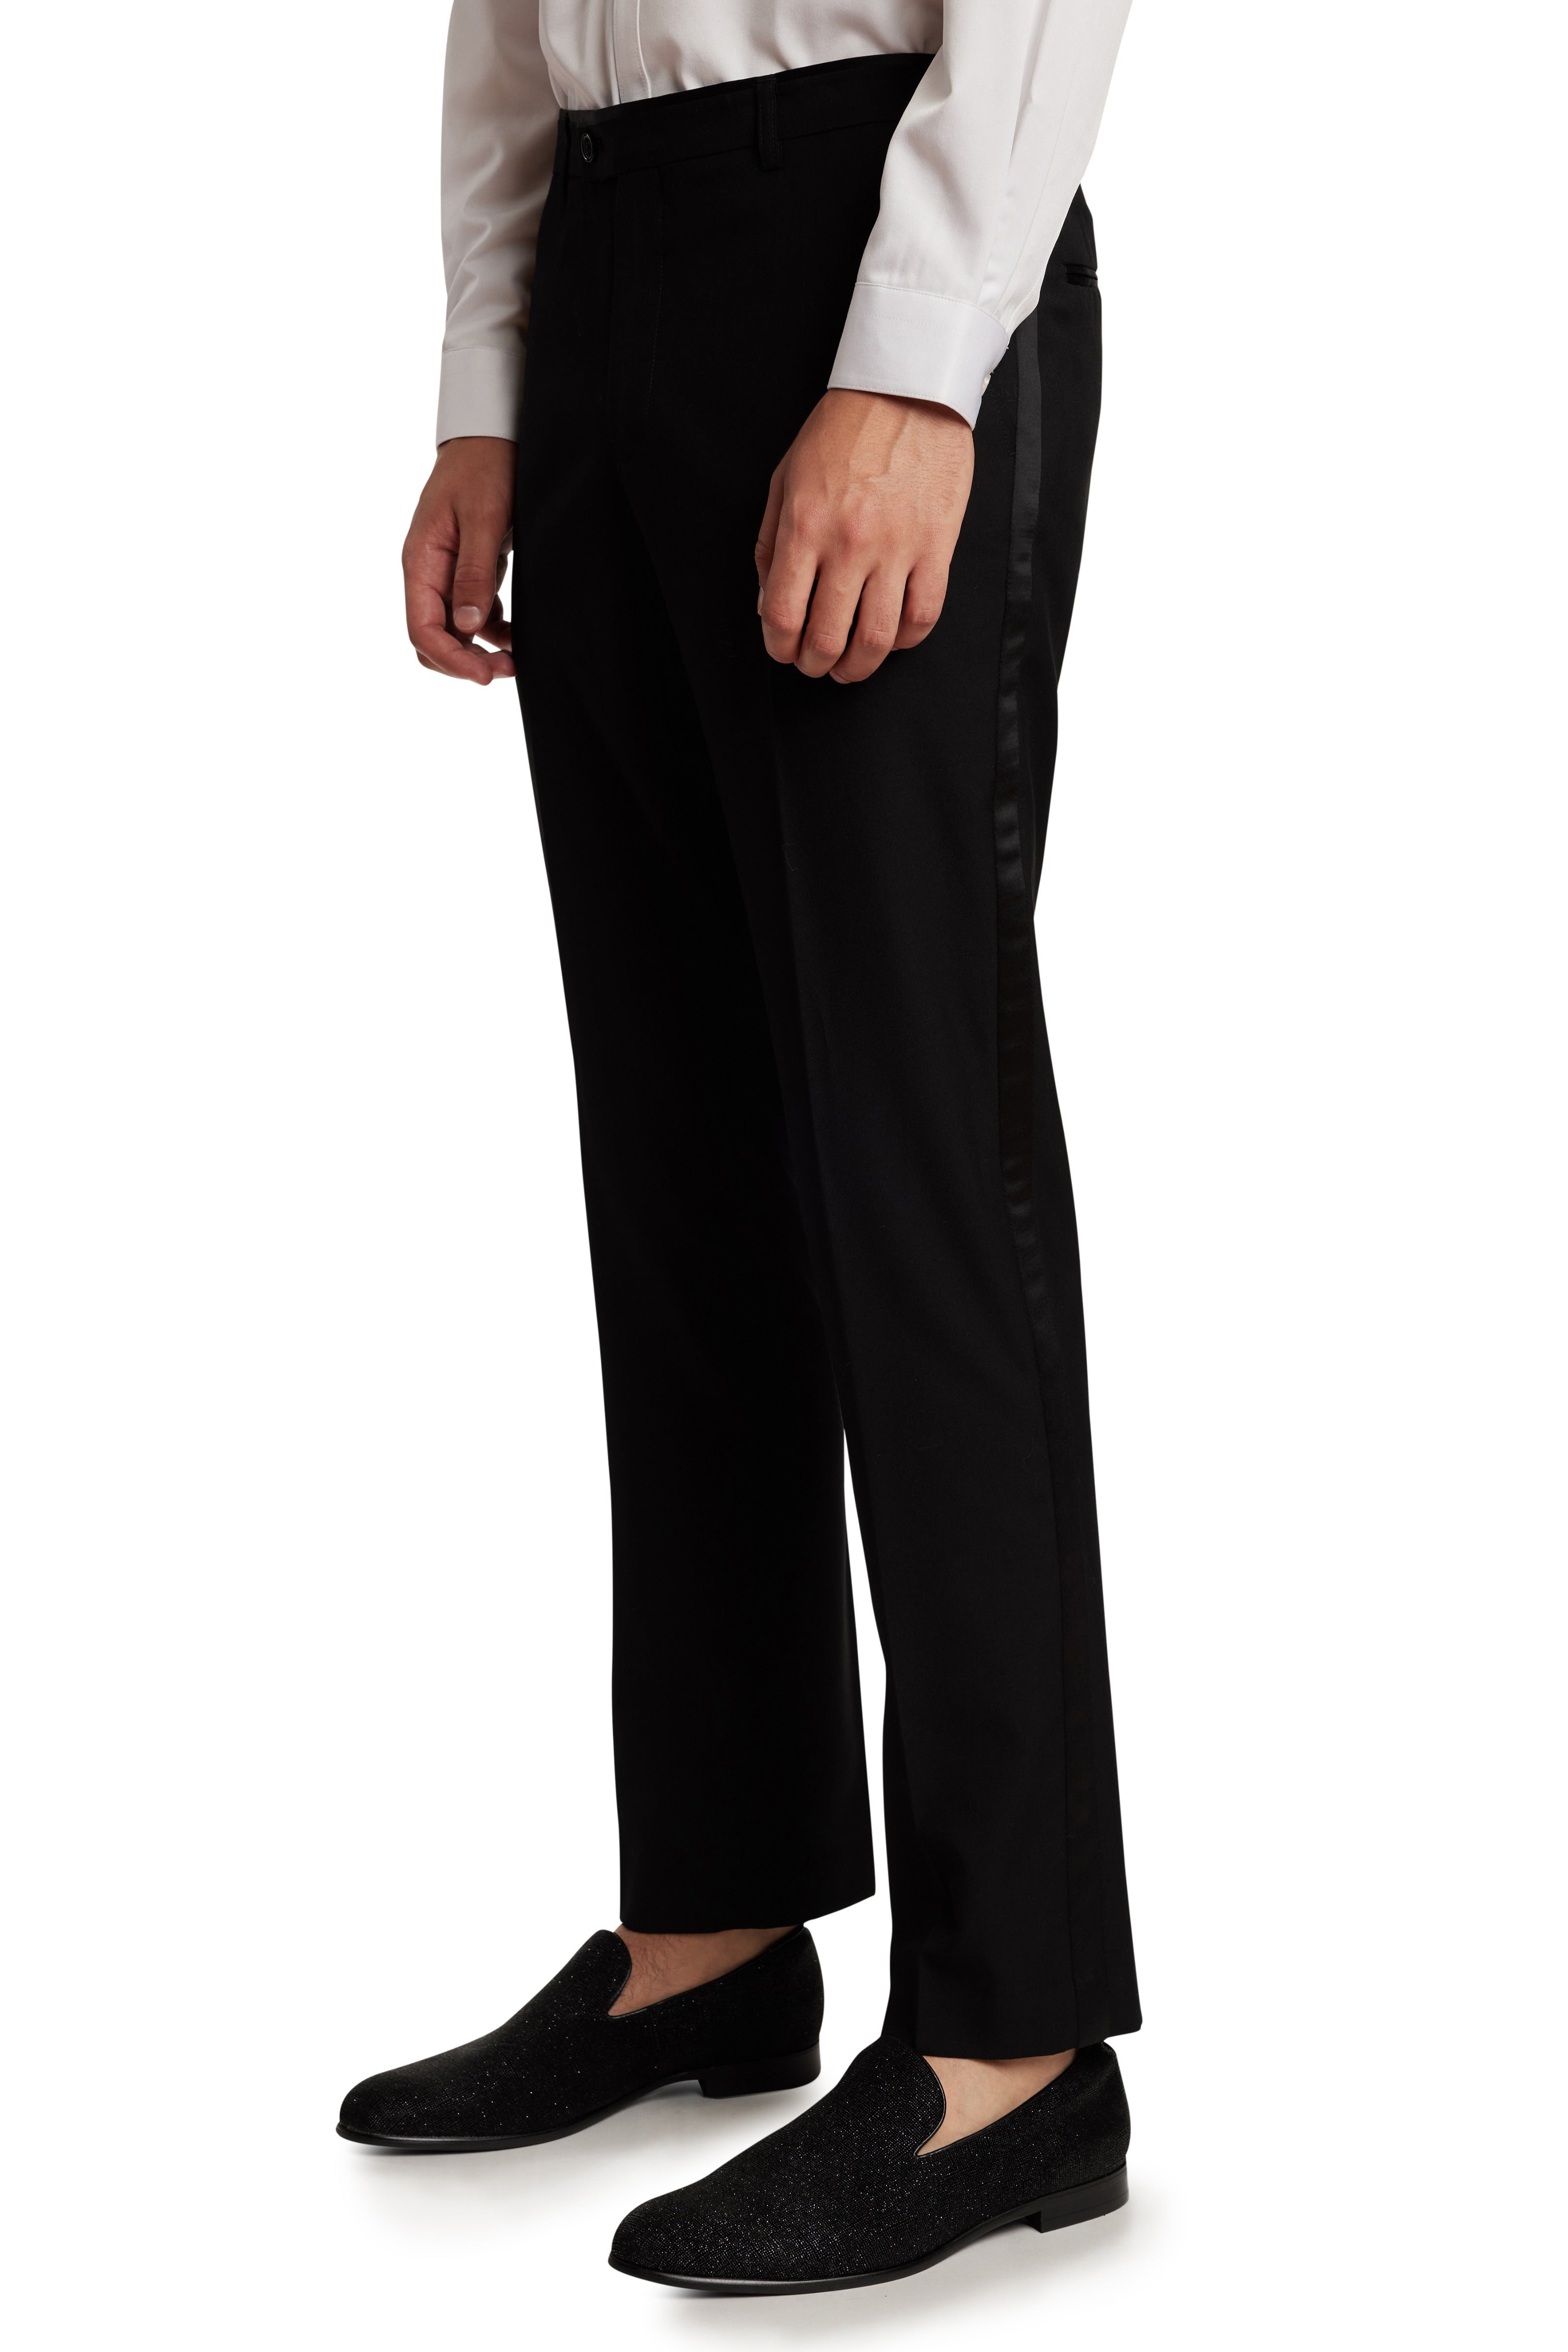 Tuxedo Pants for Men  Formal Trousers in Black or White  Fine Tuxedos